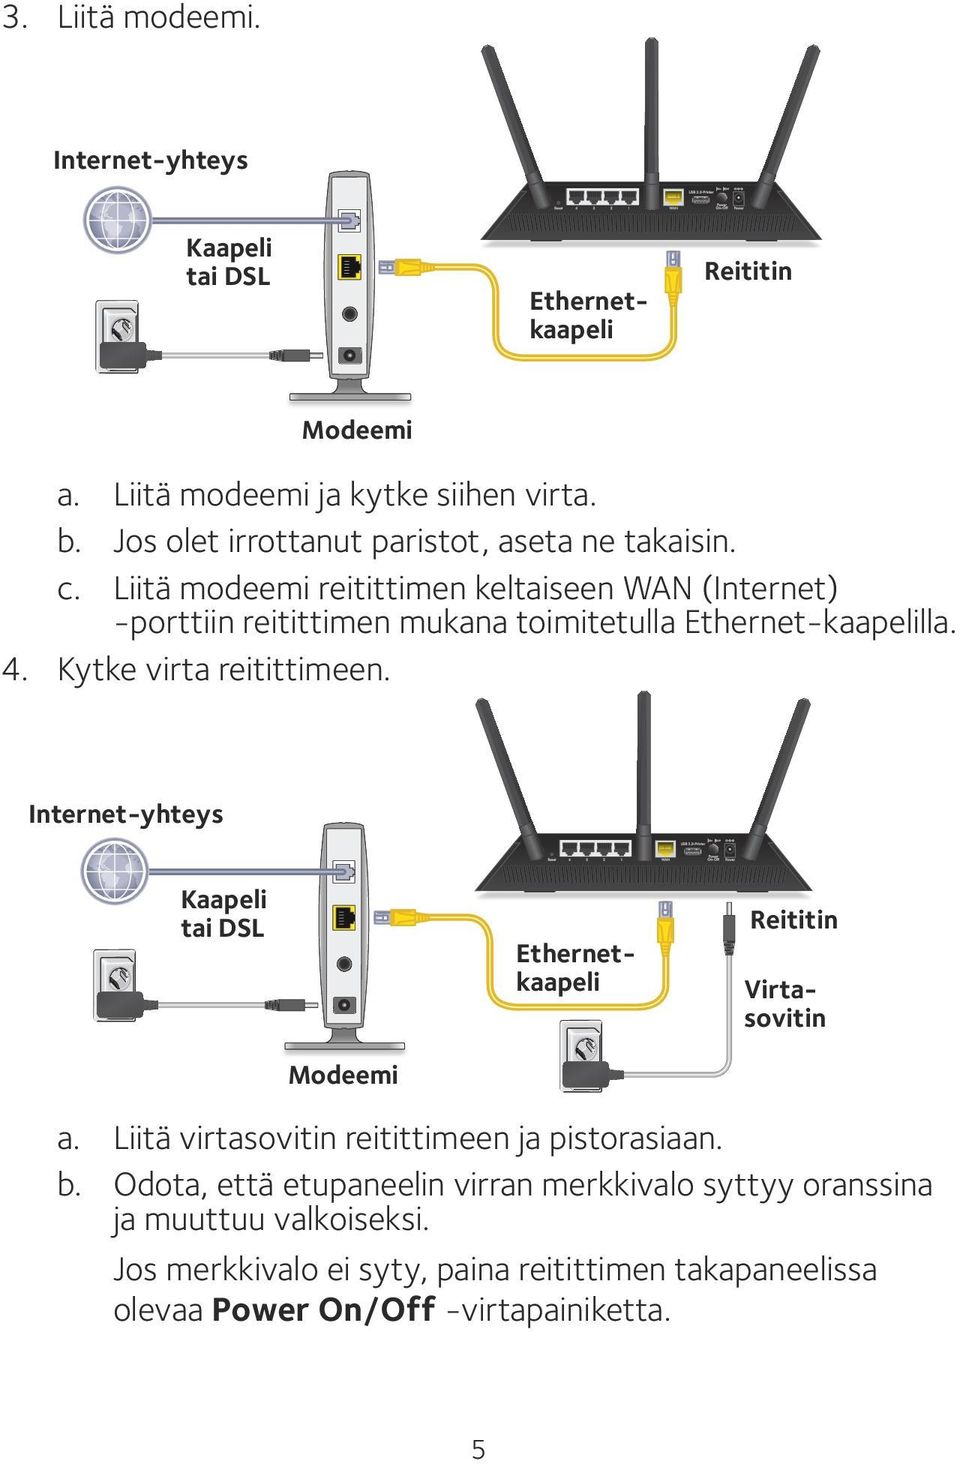 Liitä modeemi reitittimen keltaiseen WAN (Internet) -porttiin reitittimen mukana toimitetulla Ethernet-kaapelilla. 4. Kytke virta reitittimeen.